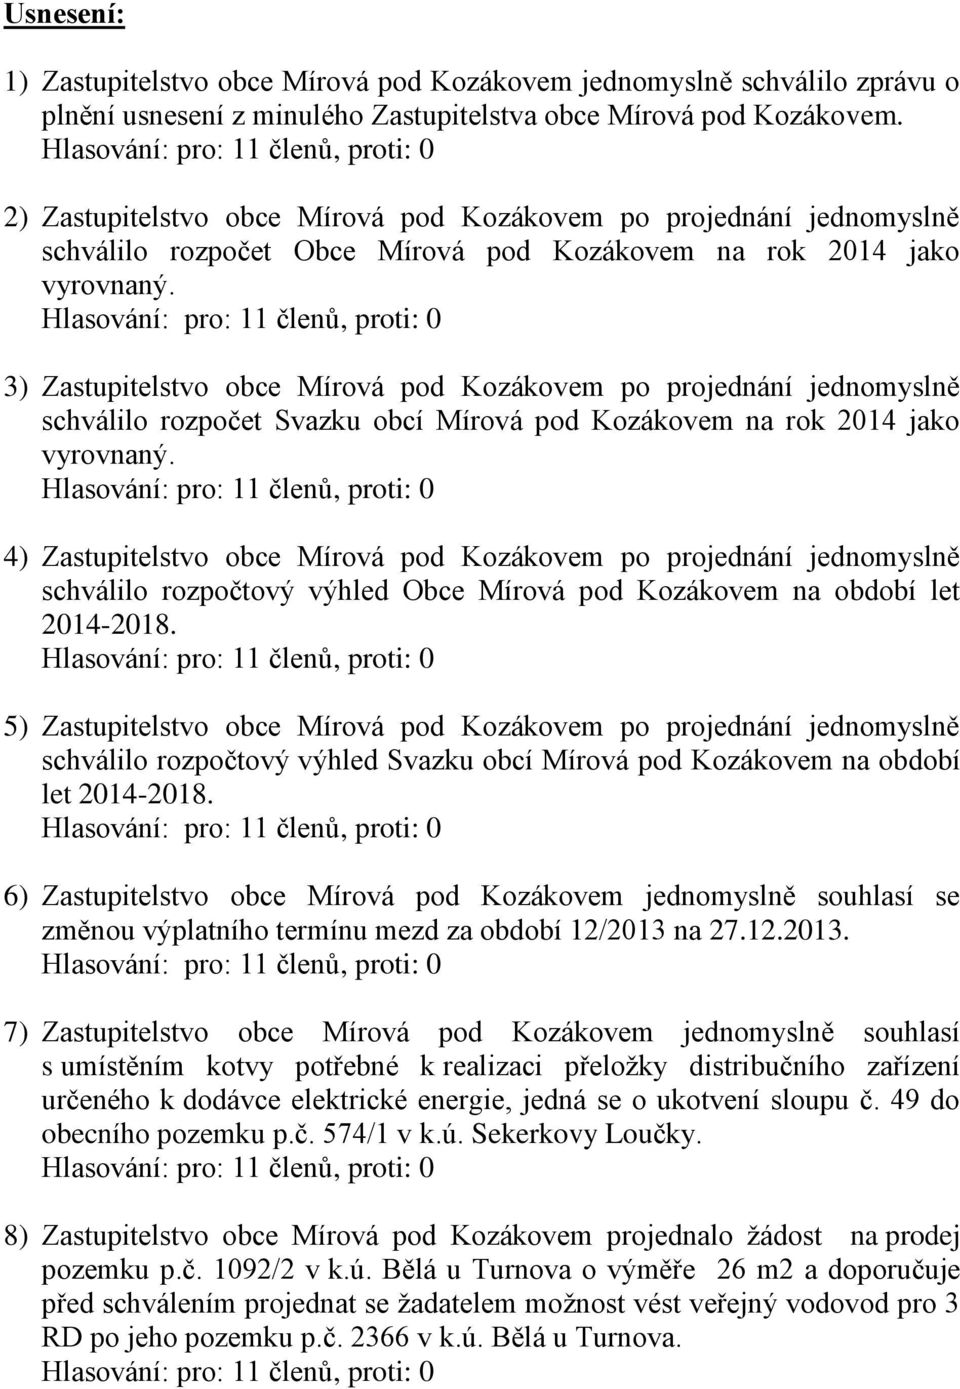 3) Zastupitelstvo obce Mírová pod Kozákovem po projednání jednomyslně schválilo rozpočet Svazku obcí Mírová pod Kozákovem na rok 2014 jako vyrovnaný.